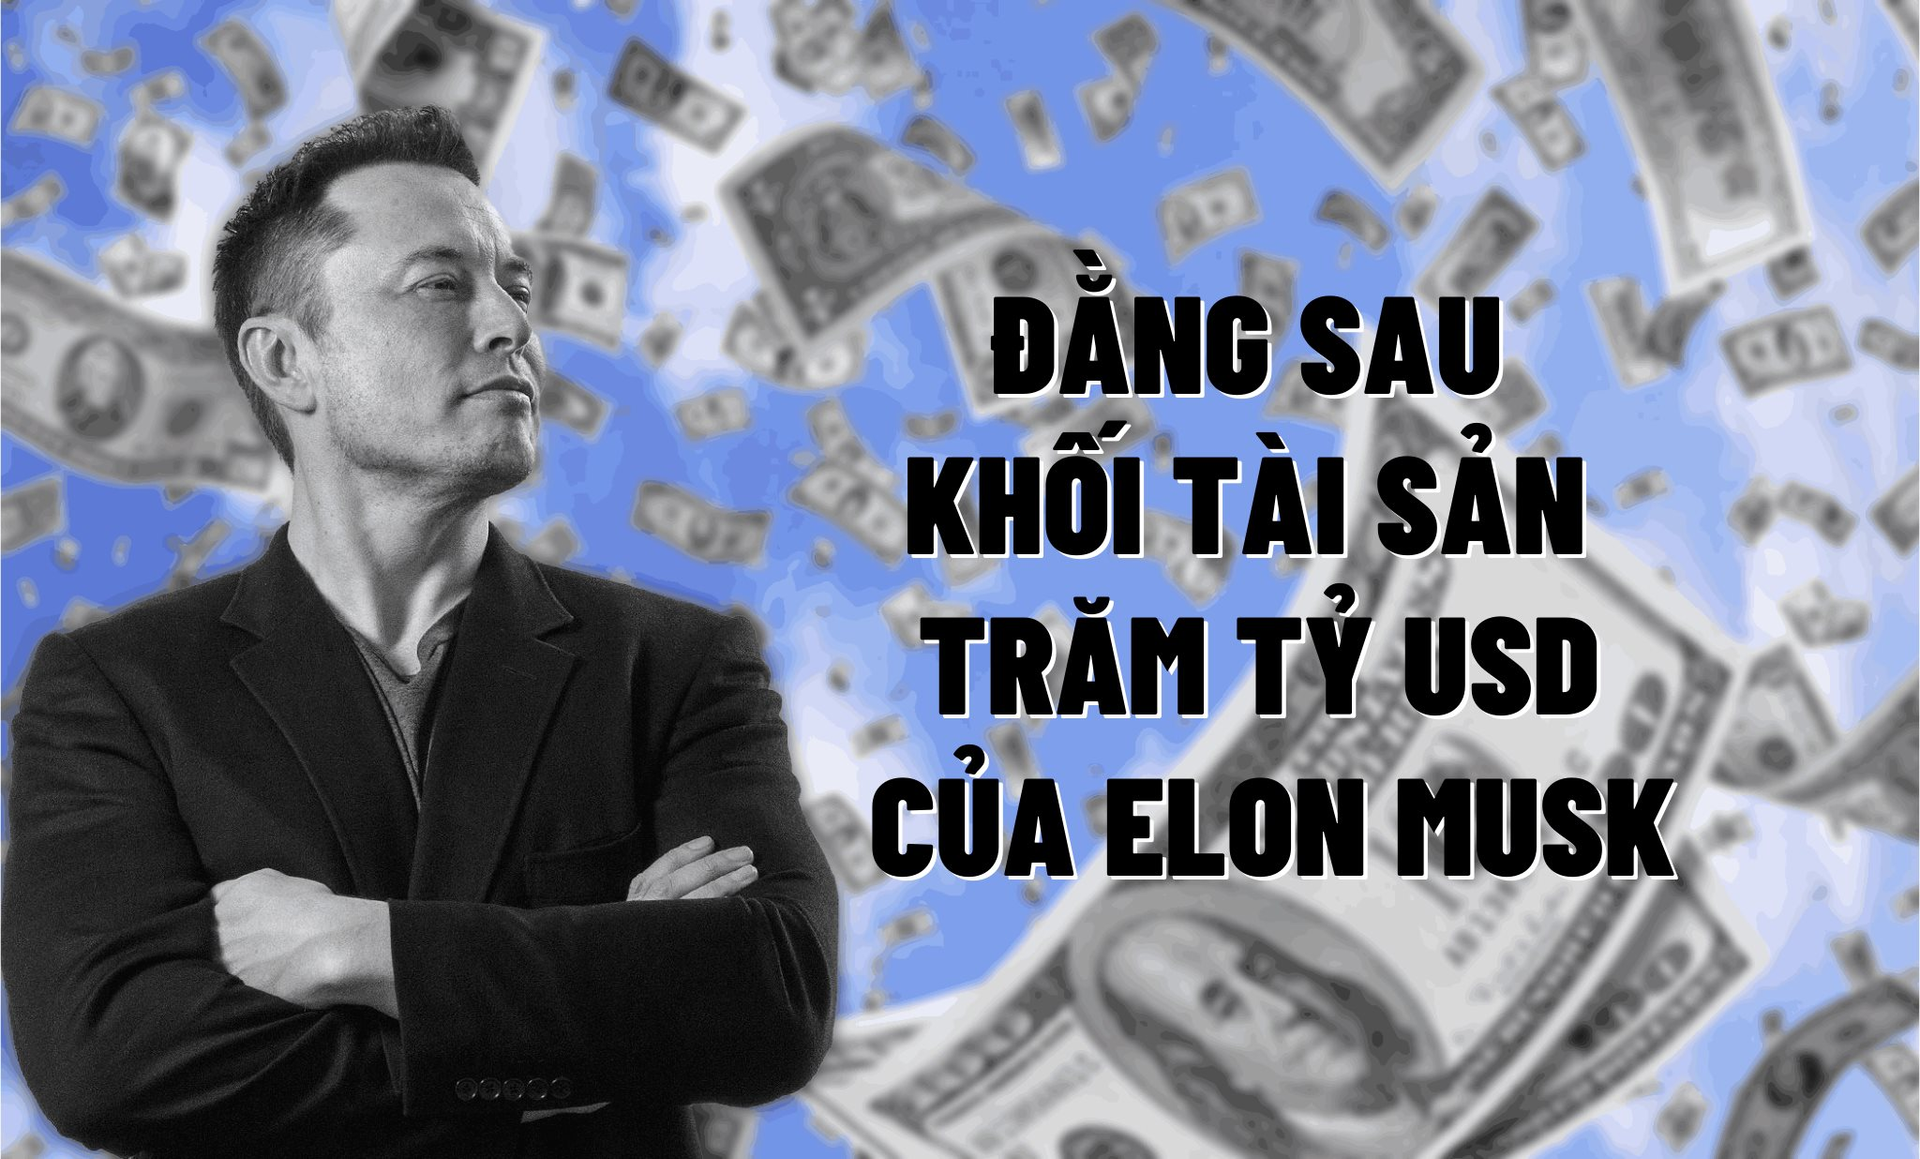 Đằng sau khối tài sản trăm tỷ USD của Elon Musk: Tiền mặt và các khoản đầu tư chỉ chiếm 2,5 tỷ USD, phần lớn… chỉ ở trên giấy - Ảnh 1.